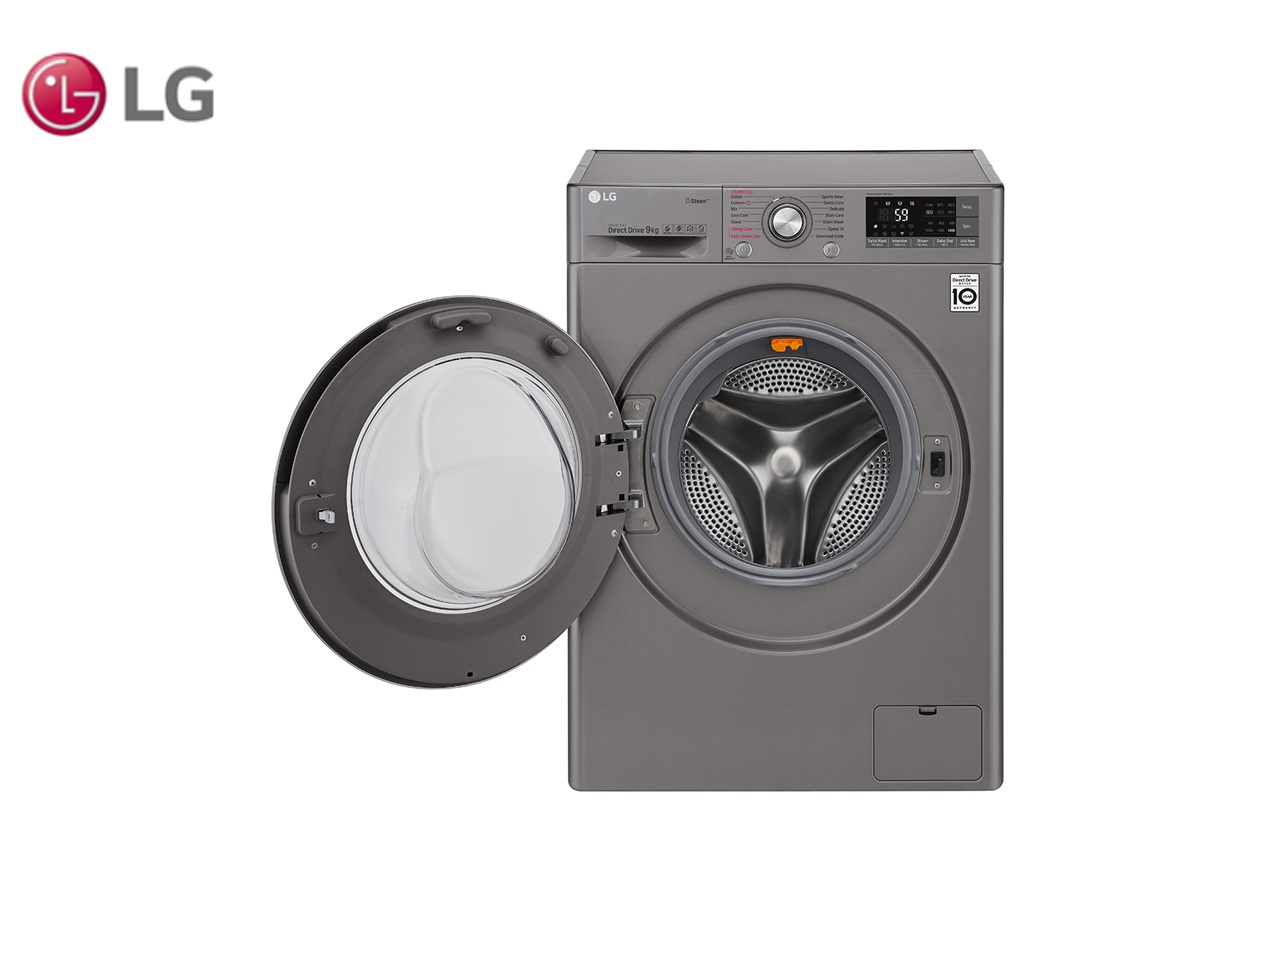 LG lance son nouveau lave-linge TurboWash360°